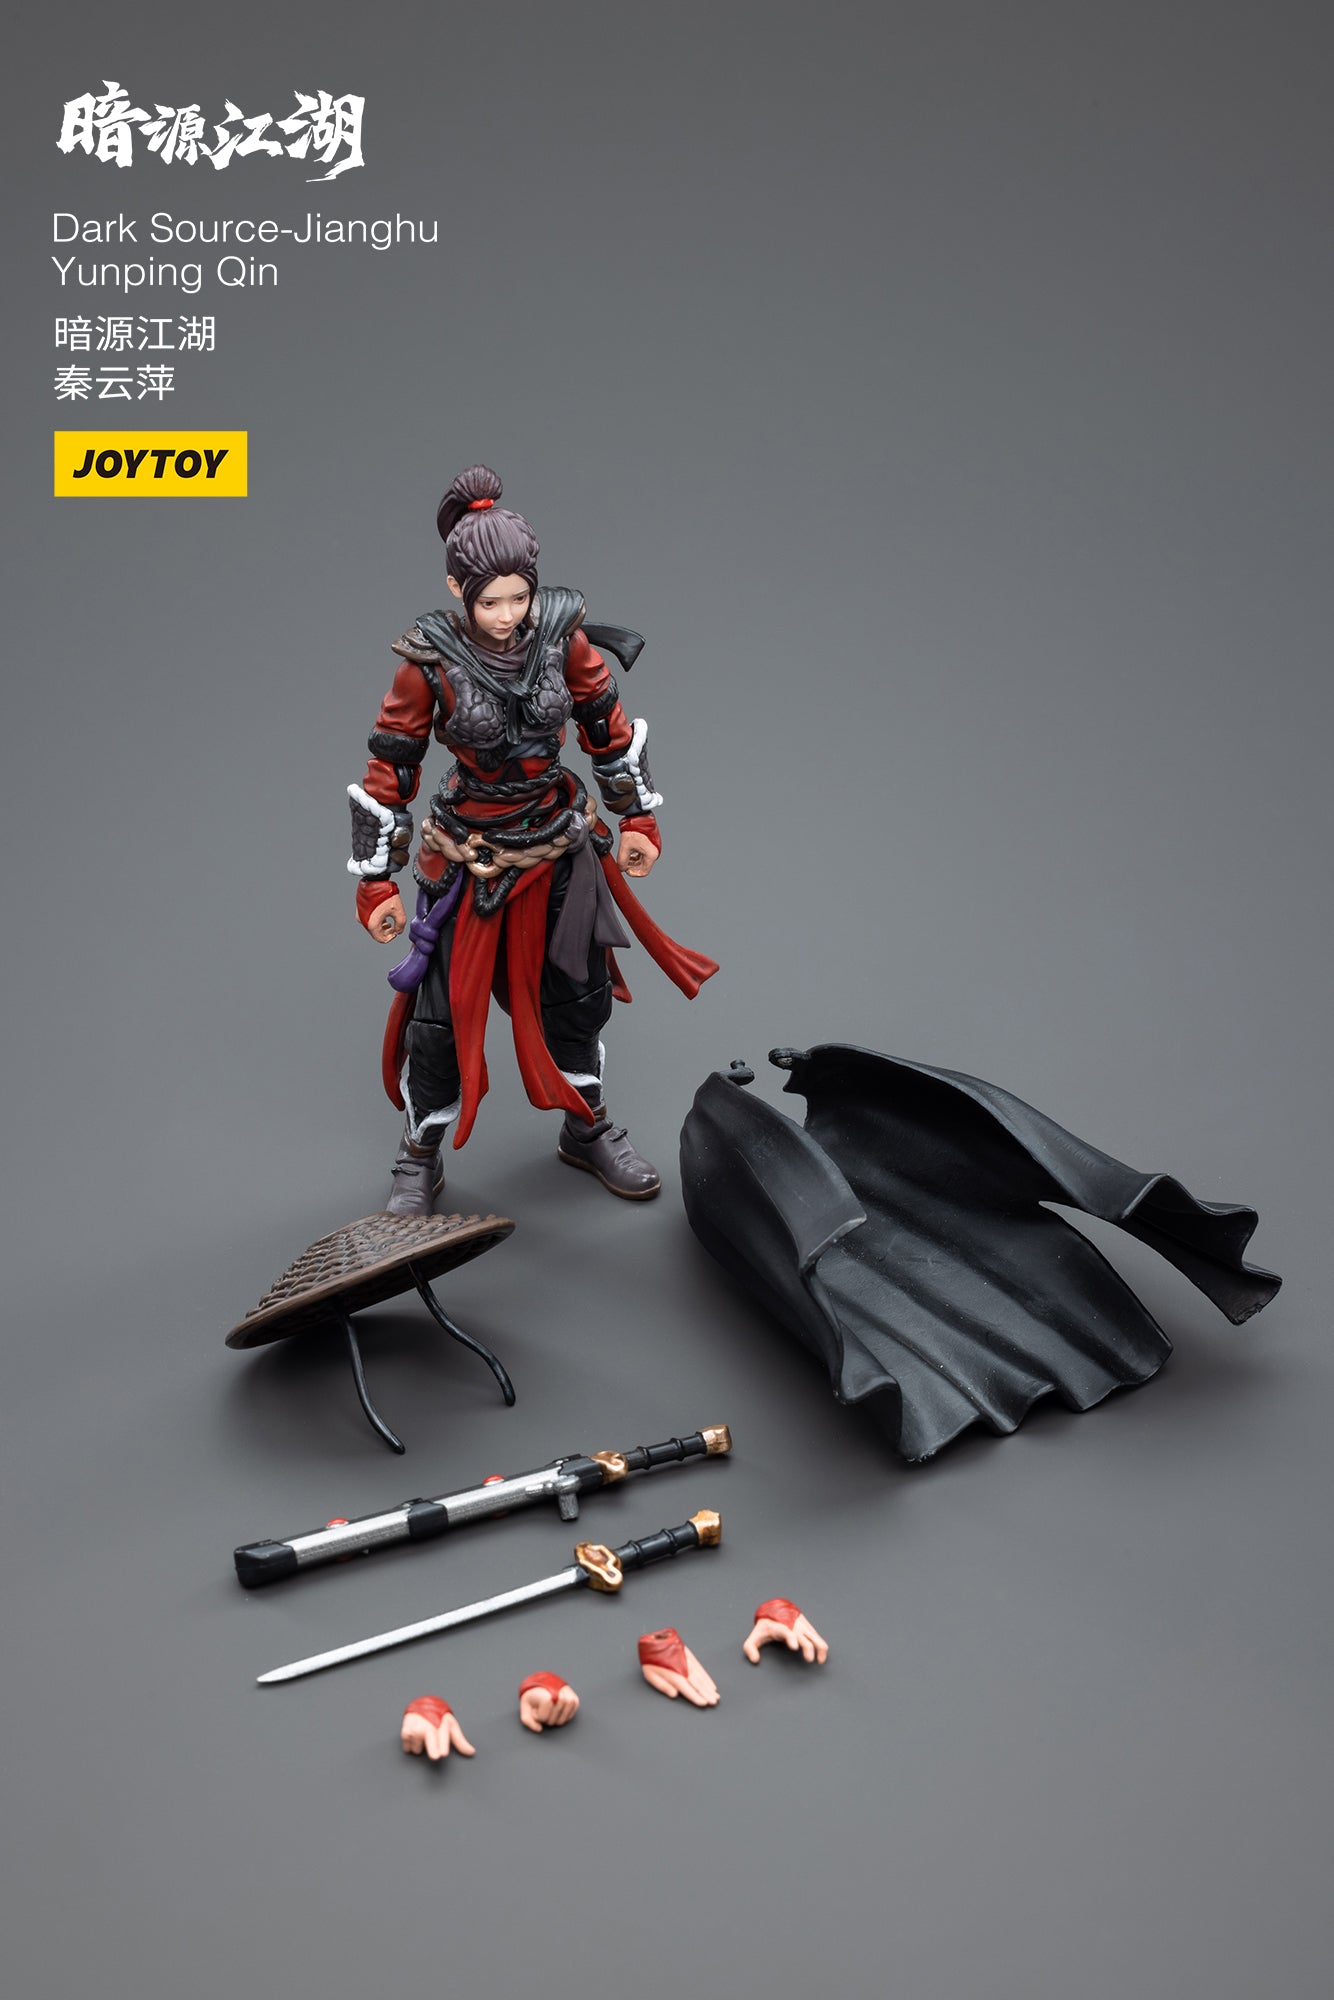 Dark Source-Jianghu Yunping Qin - Action Figure By JOYTOY